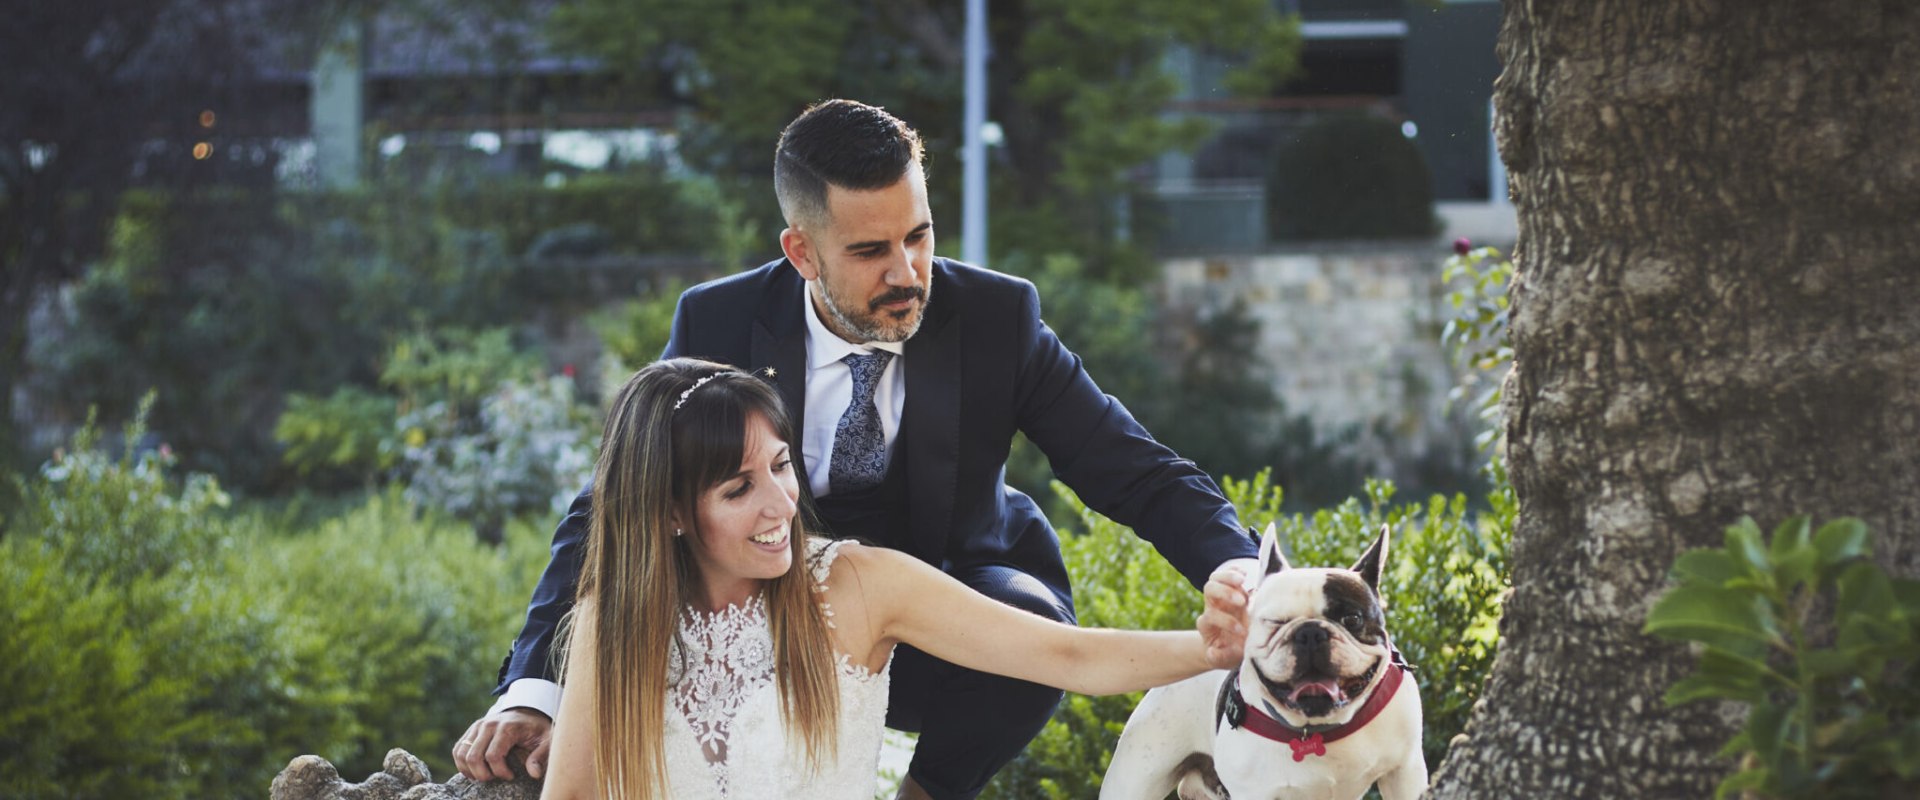 Discutir las metas y expectativas con el fotógrafo de su boda